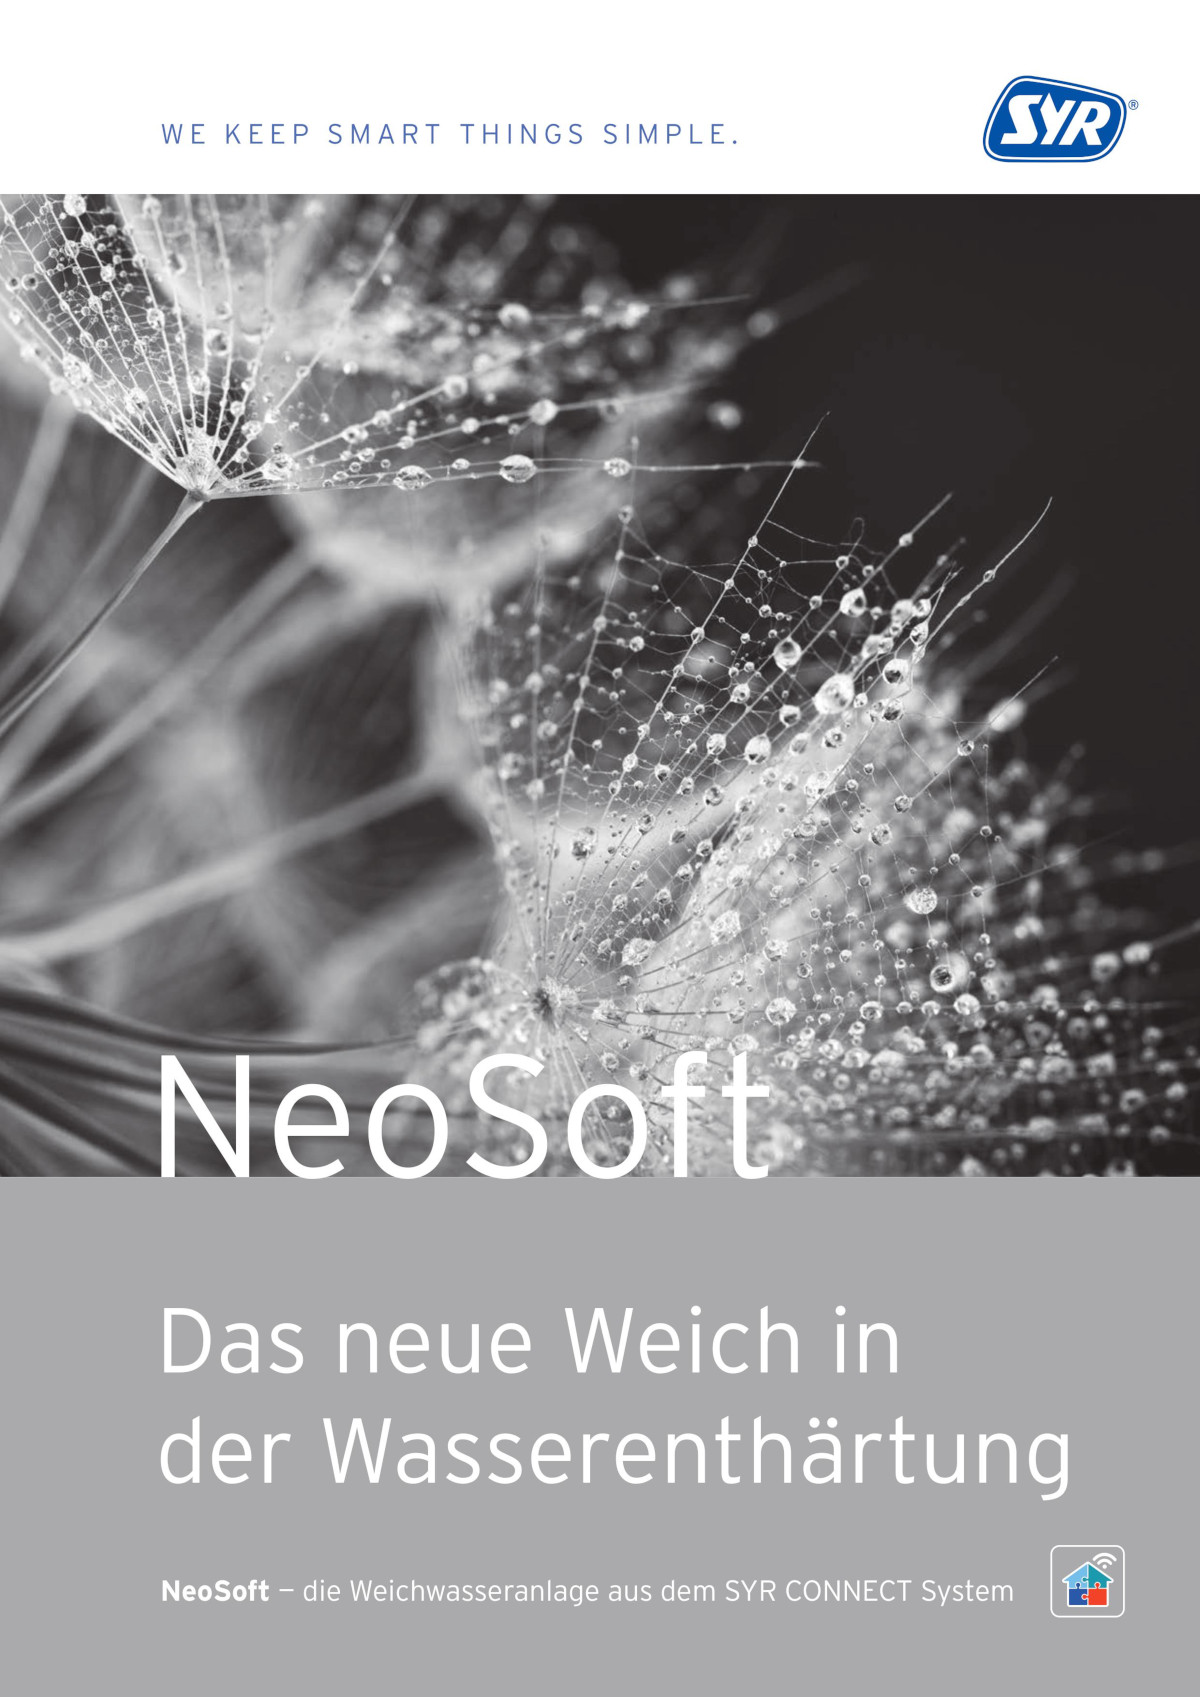 NeoSoft: Das neue Weich in
der Wasserenthärtung